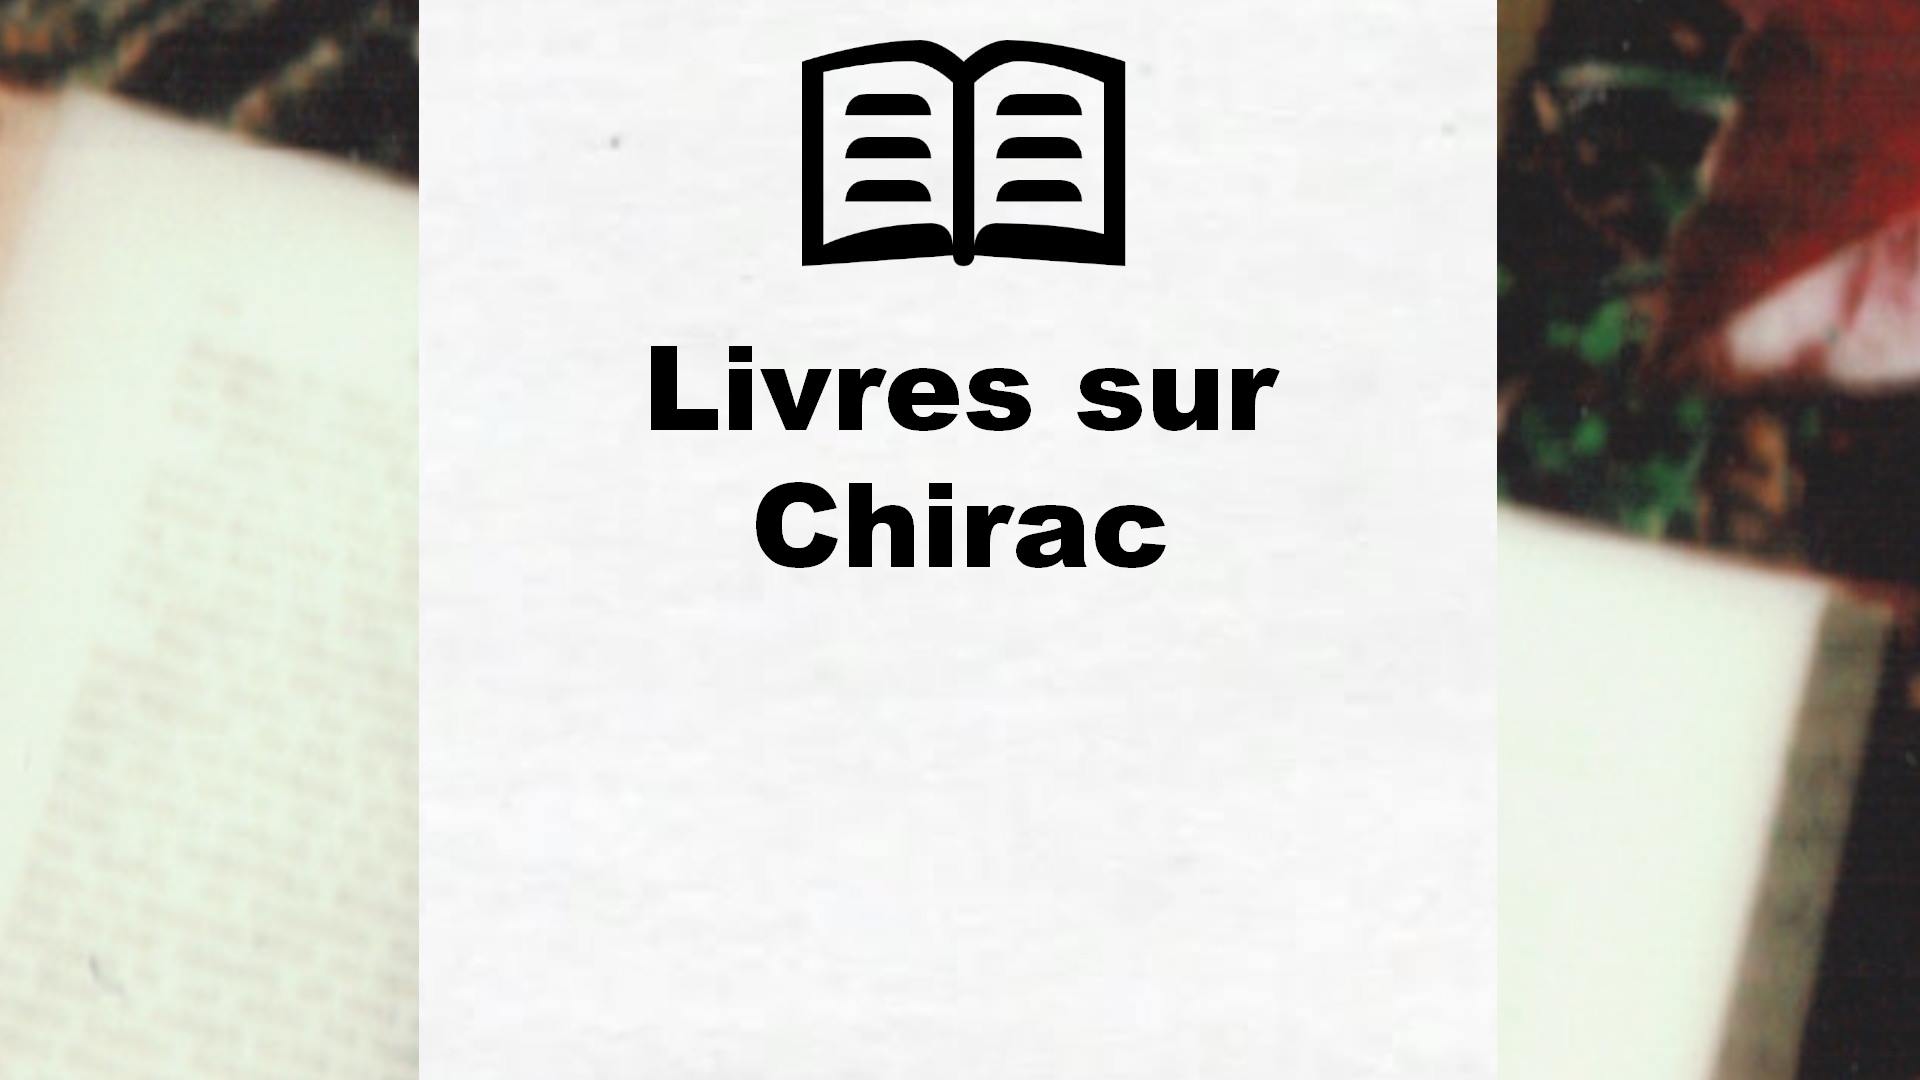 Livres sur Chirac